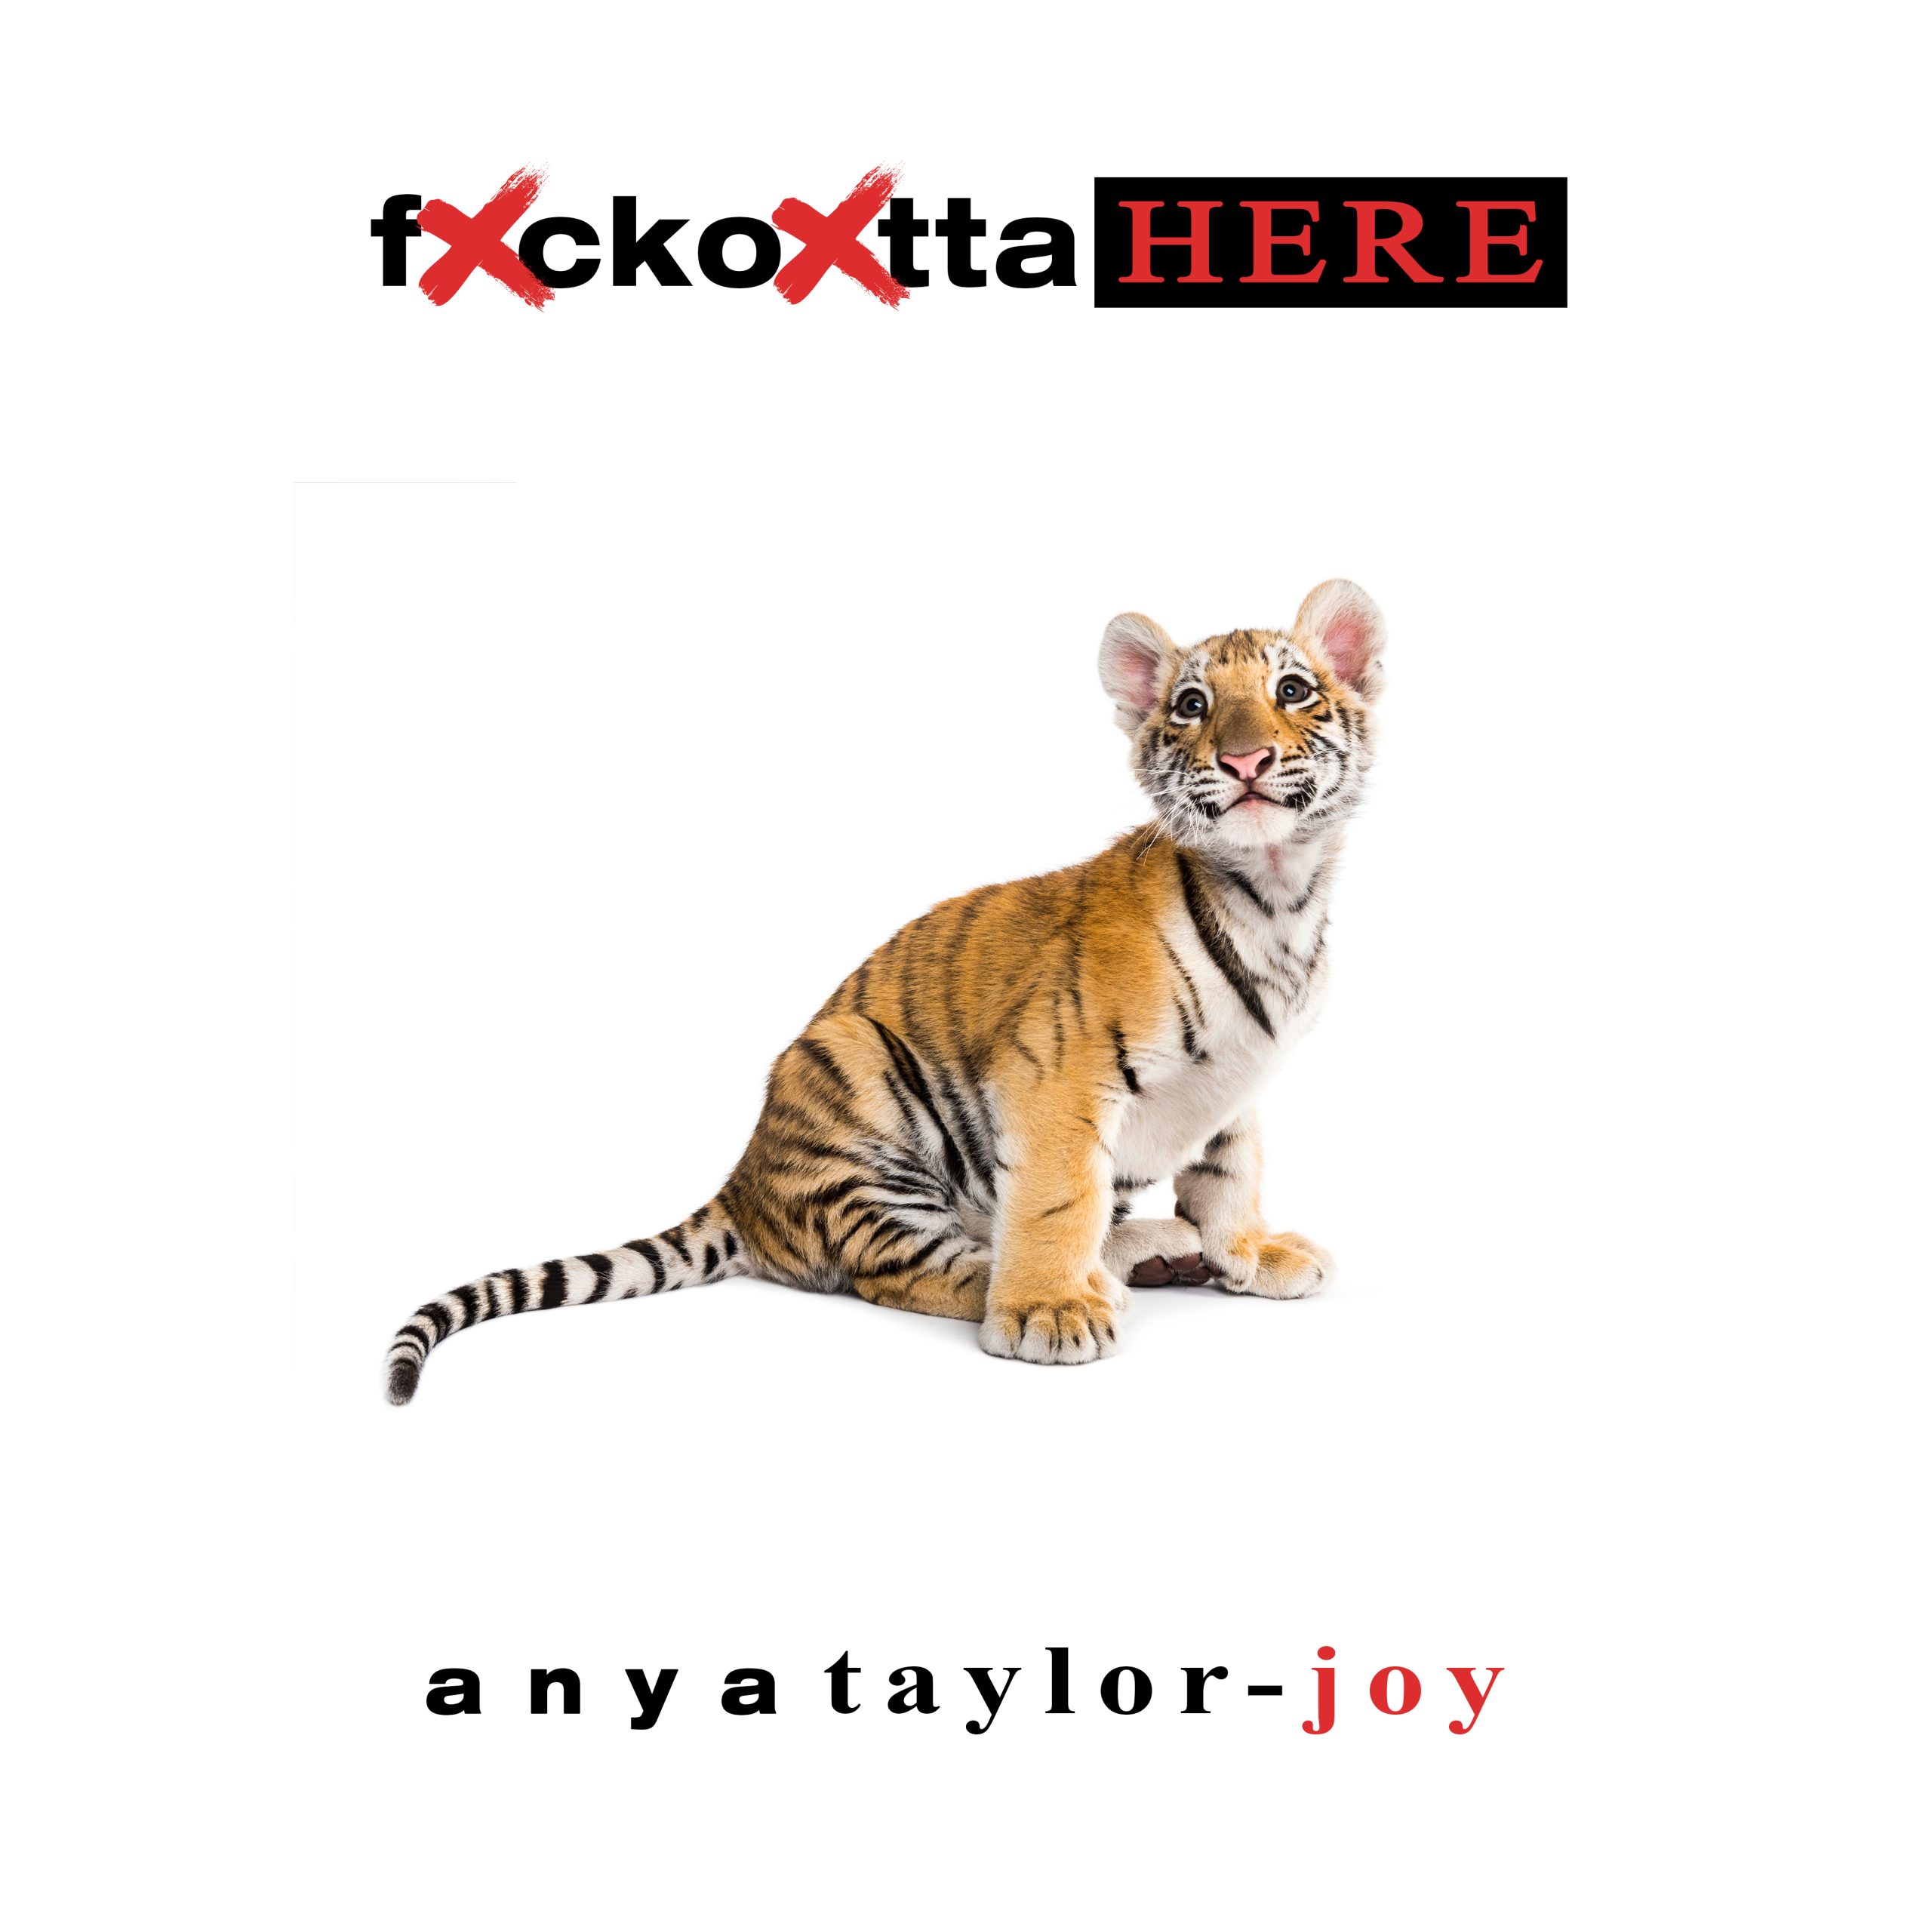 FXCKOXTTAHERE – Anya Taylor-Joy